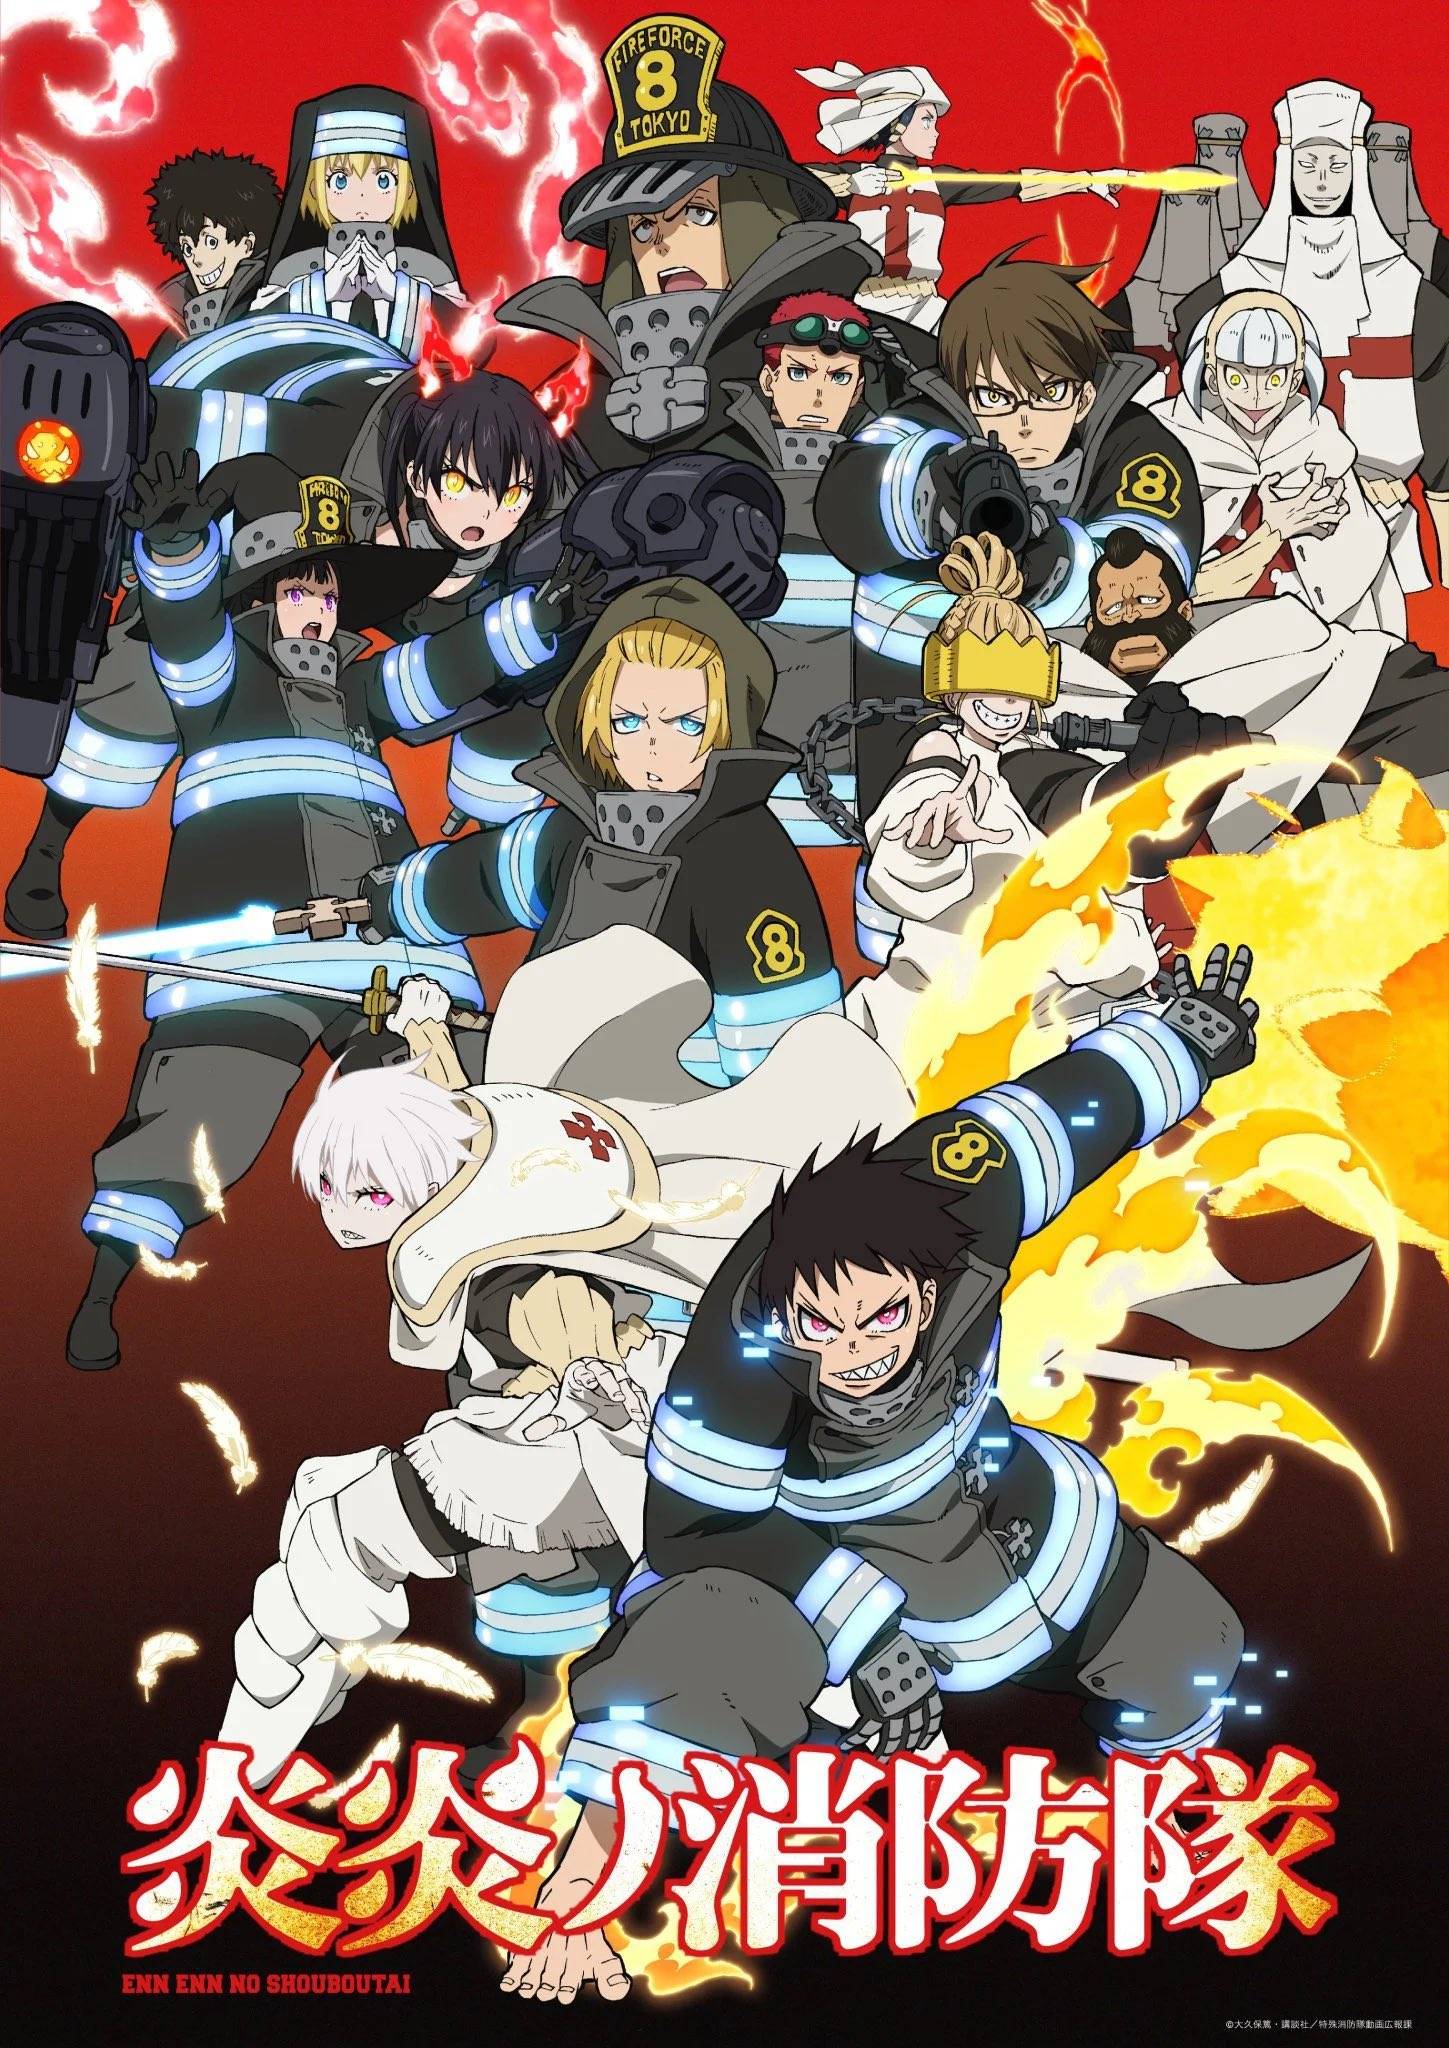 Alerta de Rumor - 3ª temporada de Fire Force sofre mudança na Staff -  AnimeNew